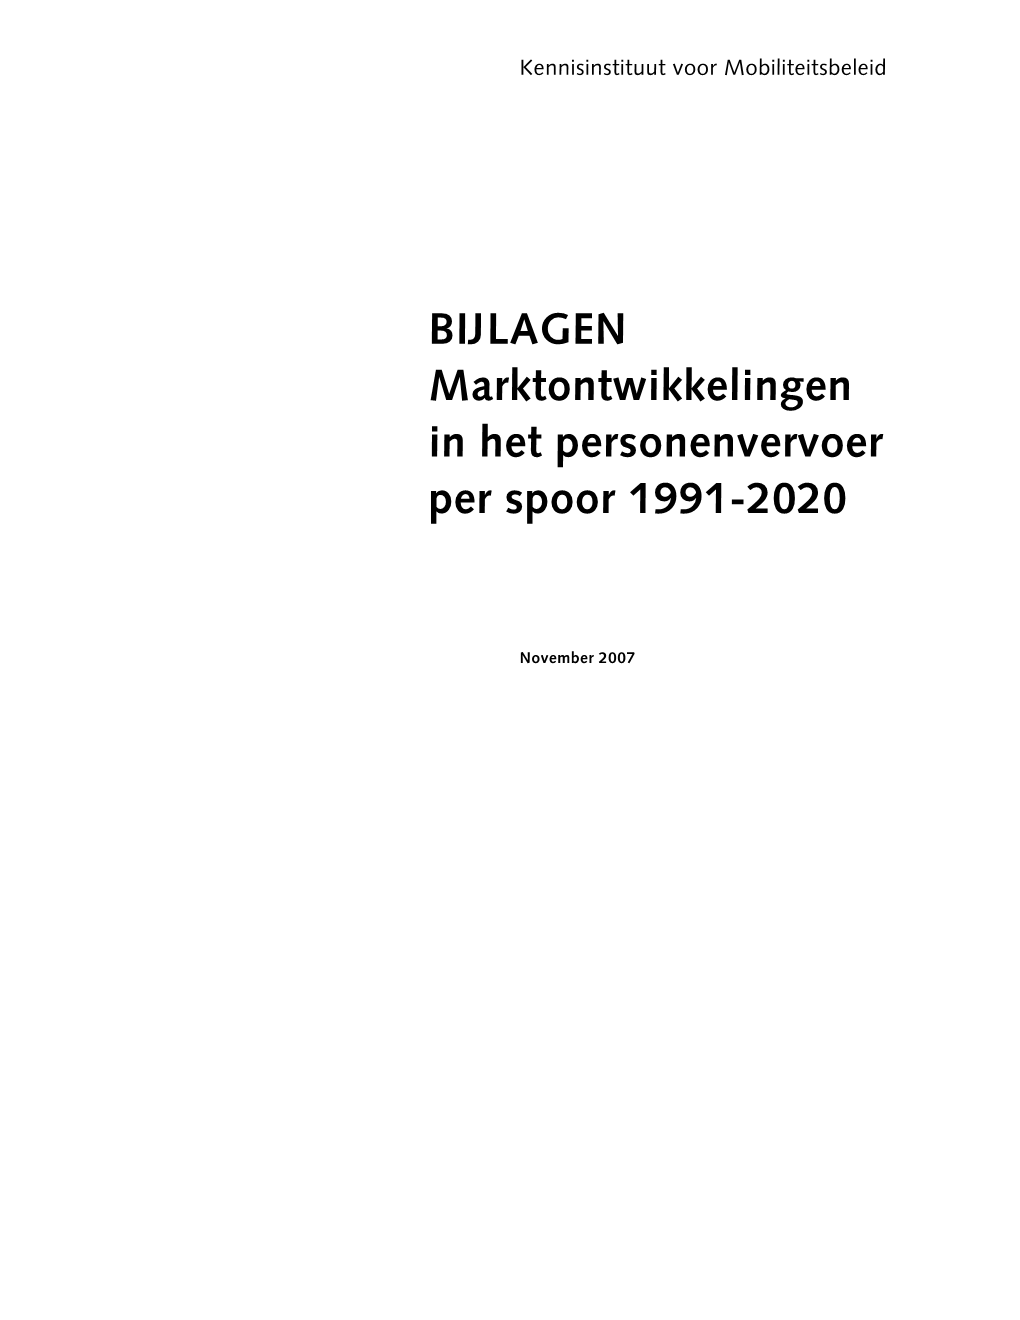 BIJLAGEN Marktontwikkelingen in Het Personenvervoer Per Spoor 1991-2020